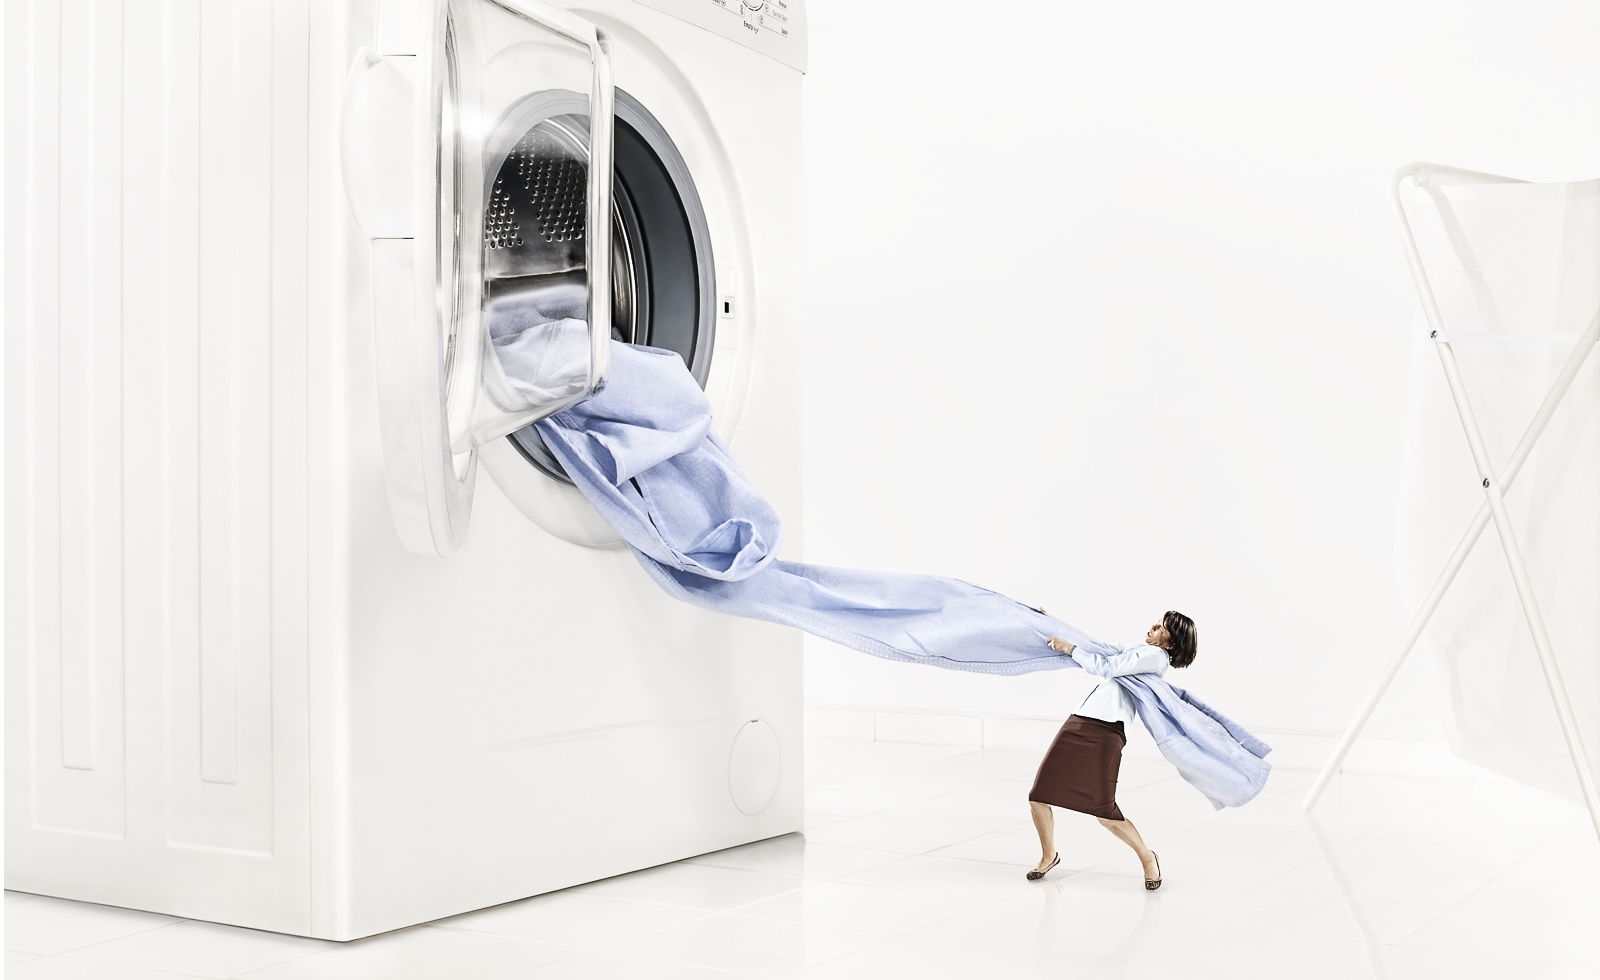 12 liktenīgās kļūdas drēbju mazgāšanas laikā! Par kurām jūs nekad nebūtu iedomājusies!